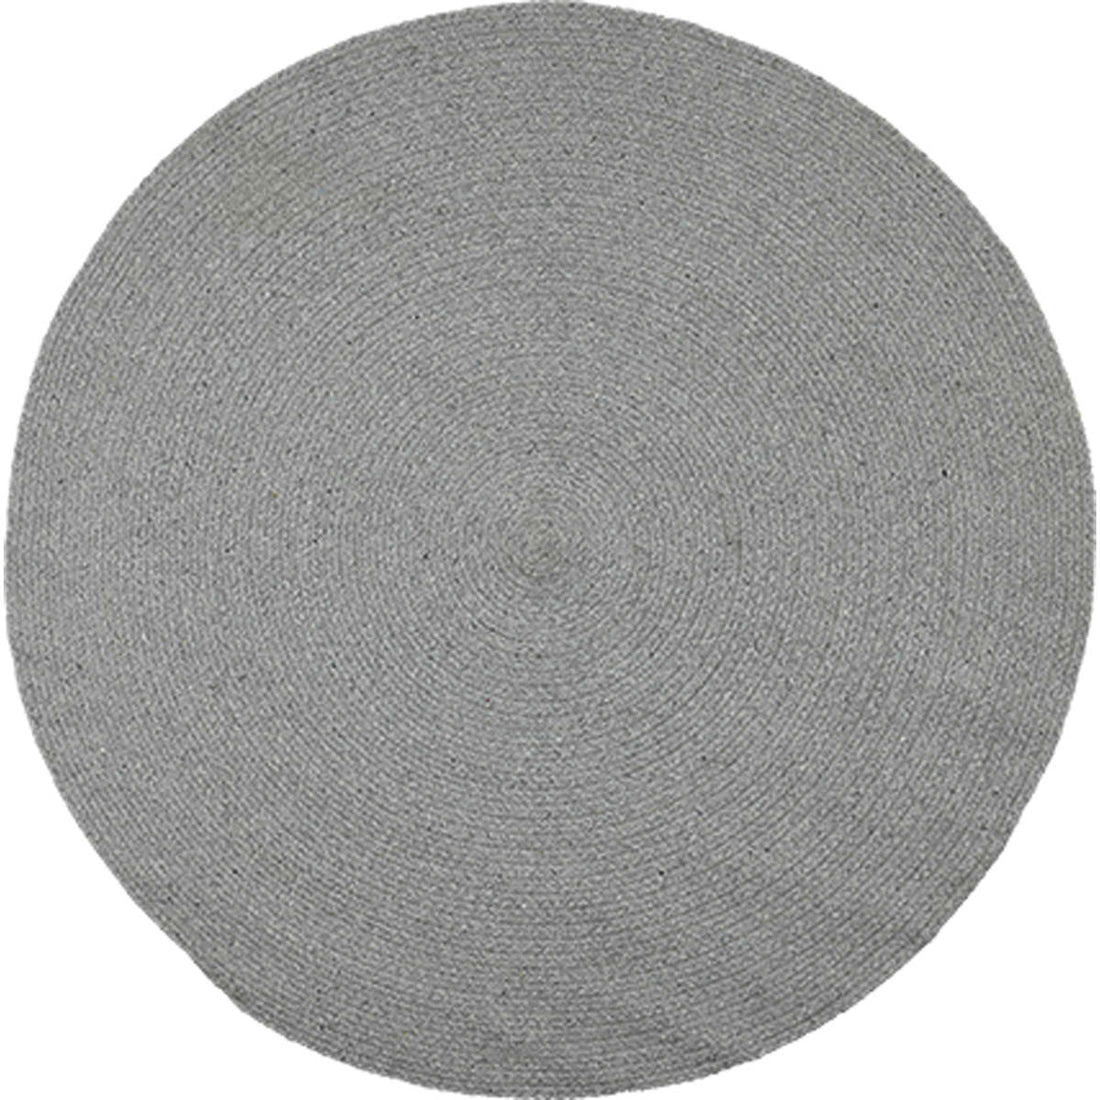 Liv Interior Teppich Moon 130 cm rund Grau Baumwolle Öko